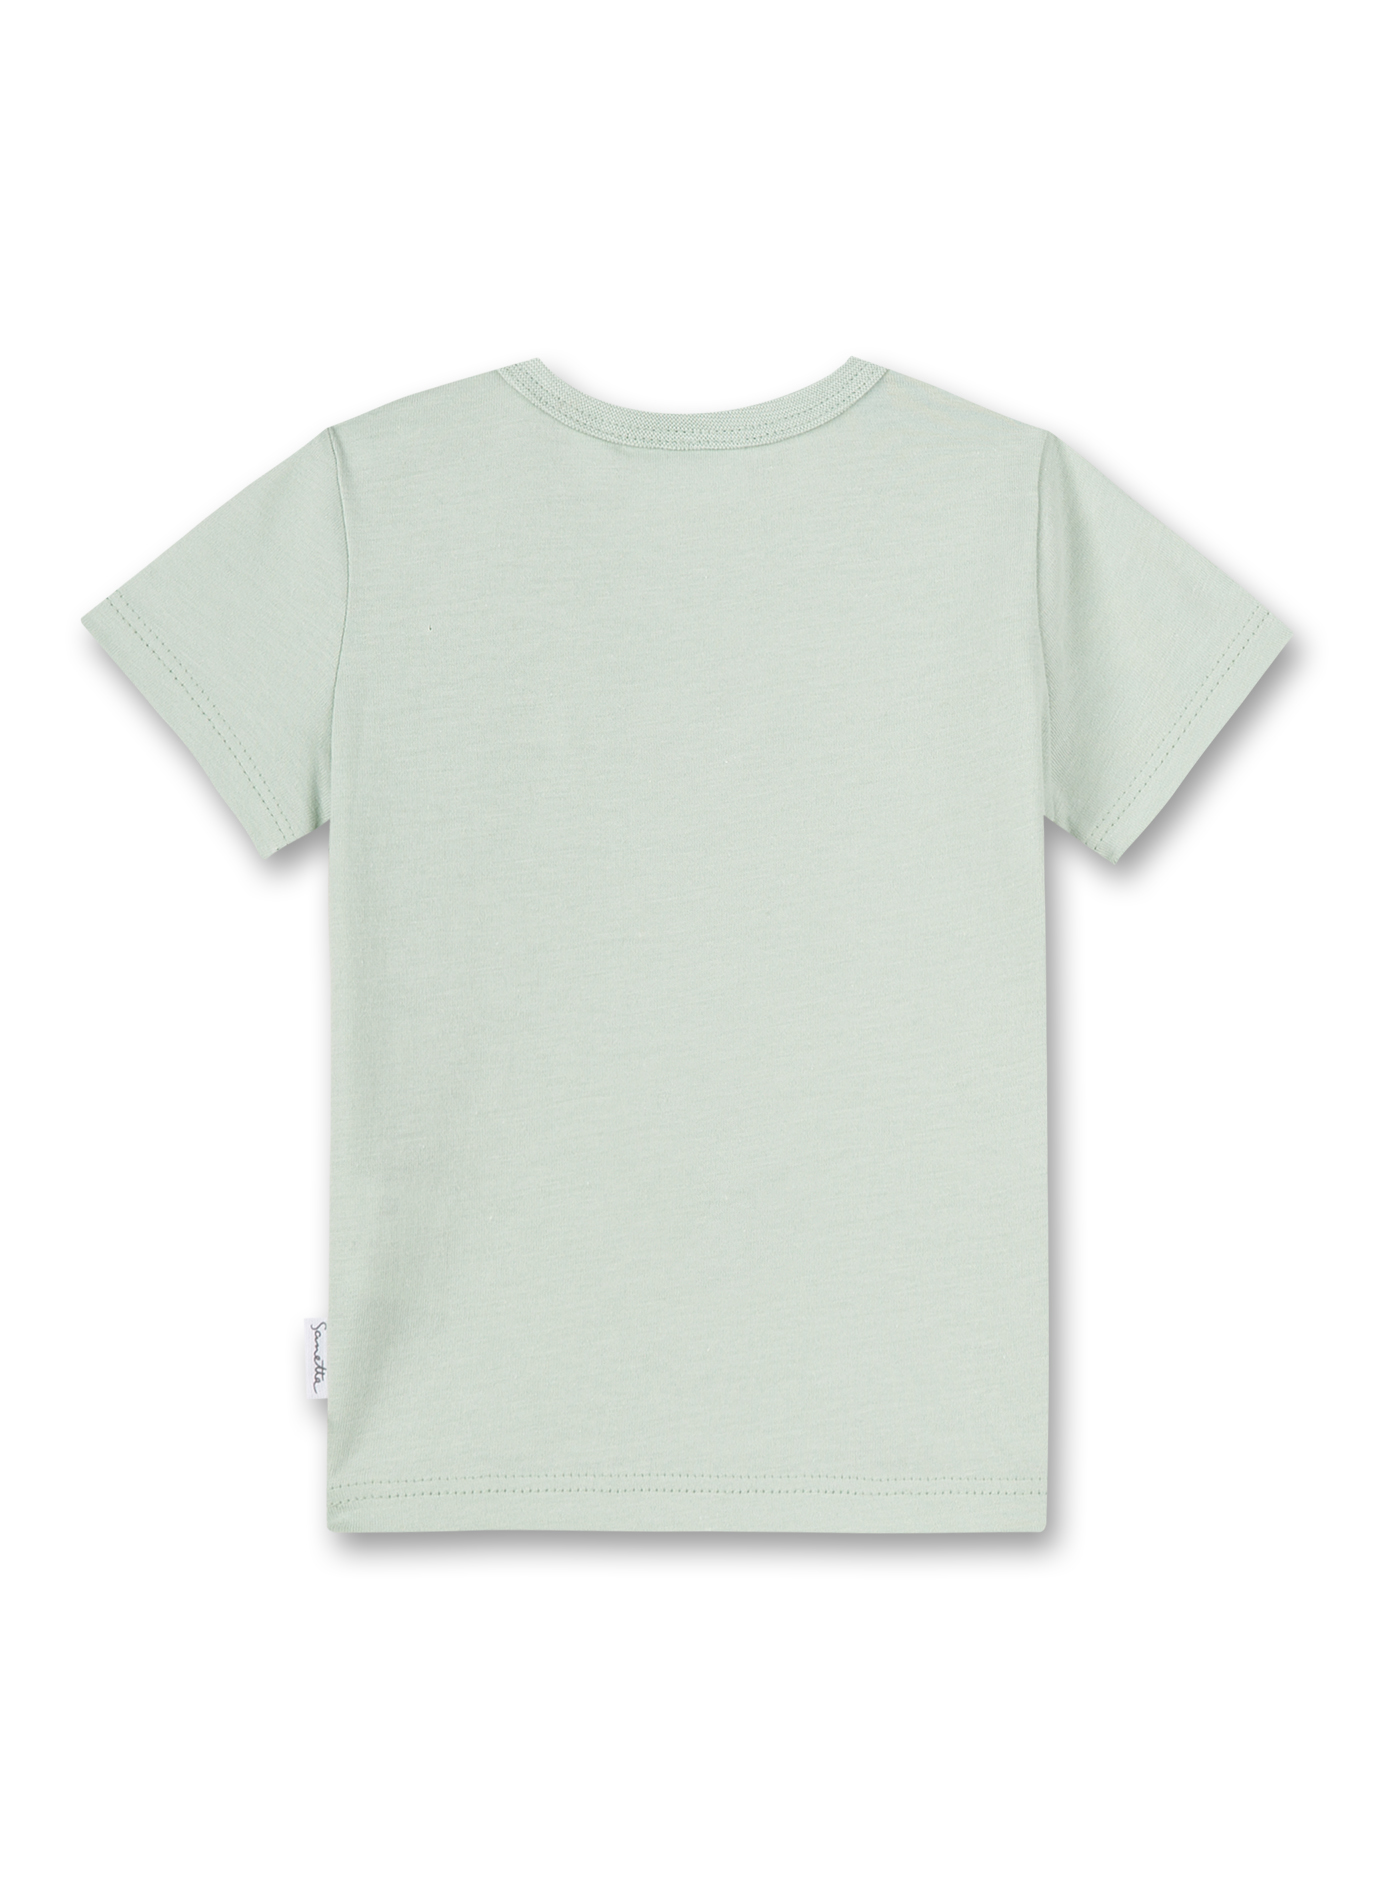 Unisex T-Shirt Grün